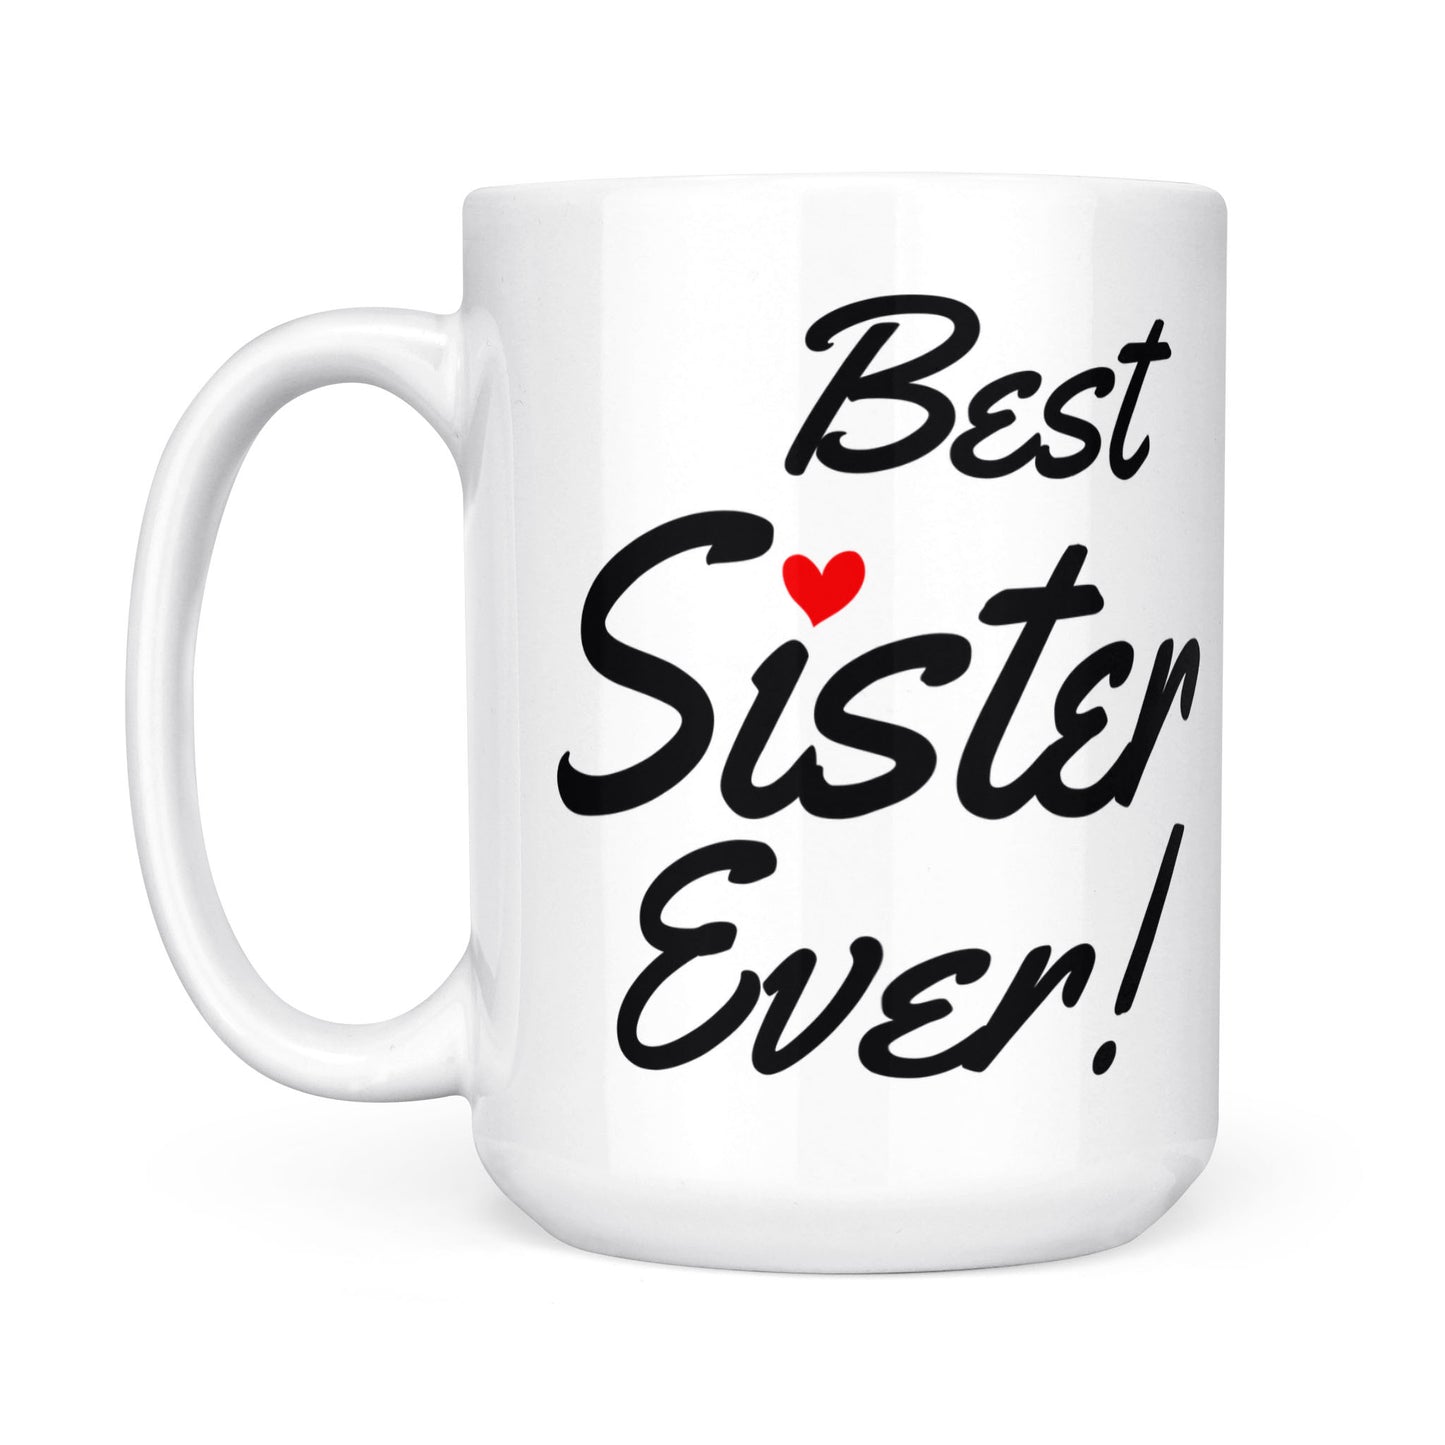 Best Sister Ever Mugs